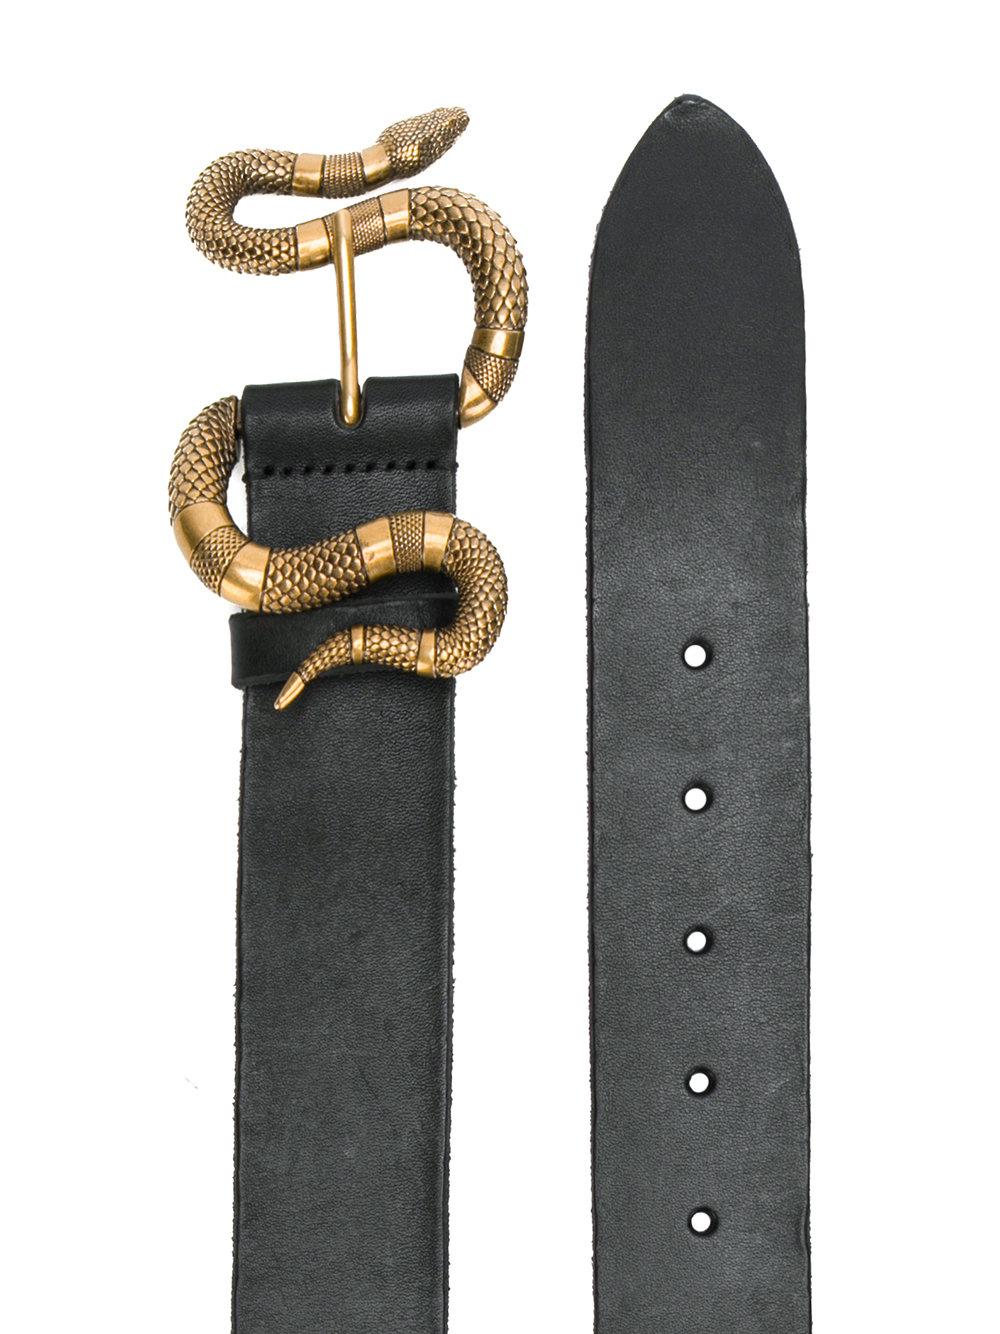 Lyst - Gucci Snake Buckle Belt in Black for Men